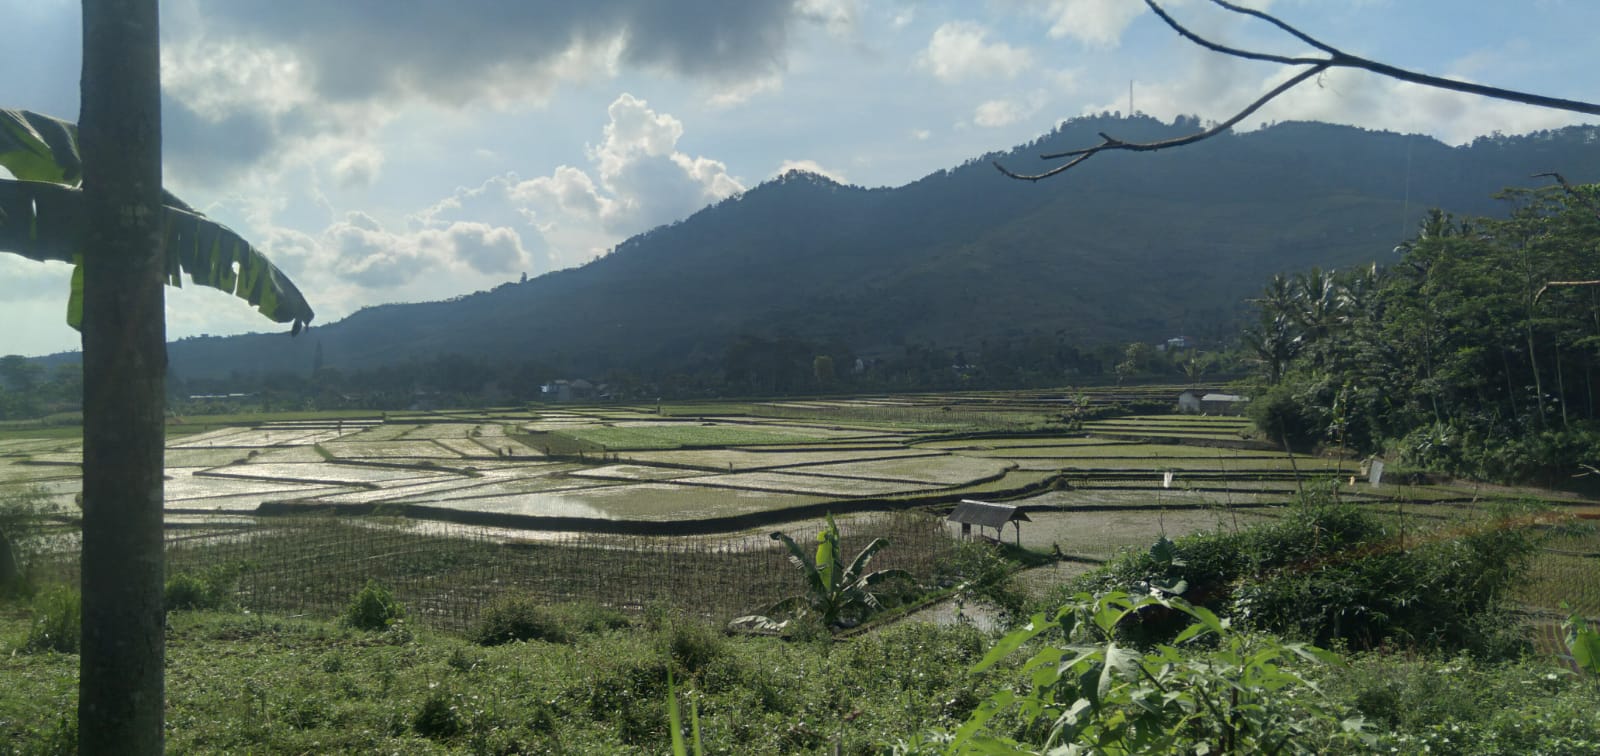 Ilustrasi teritorial kerajaan: Area pesawahan di Desa Nagreg Kendan, Kecamatan Nagreg, Kabupaten Bandung. (Yanuar/Jabar Ekspres)